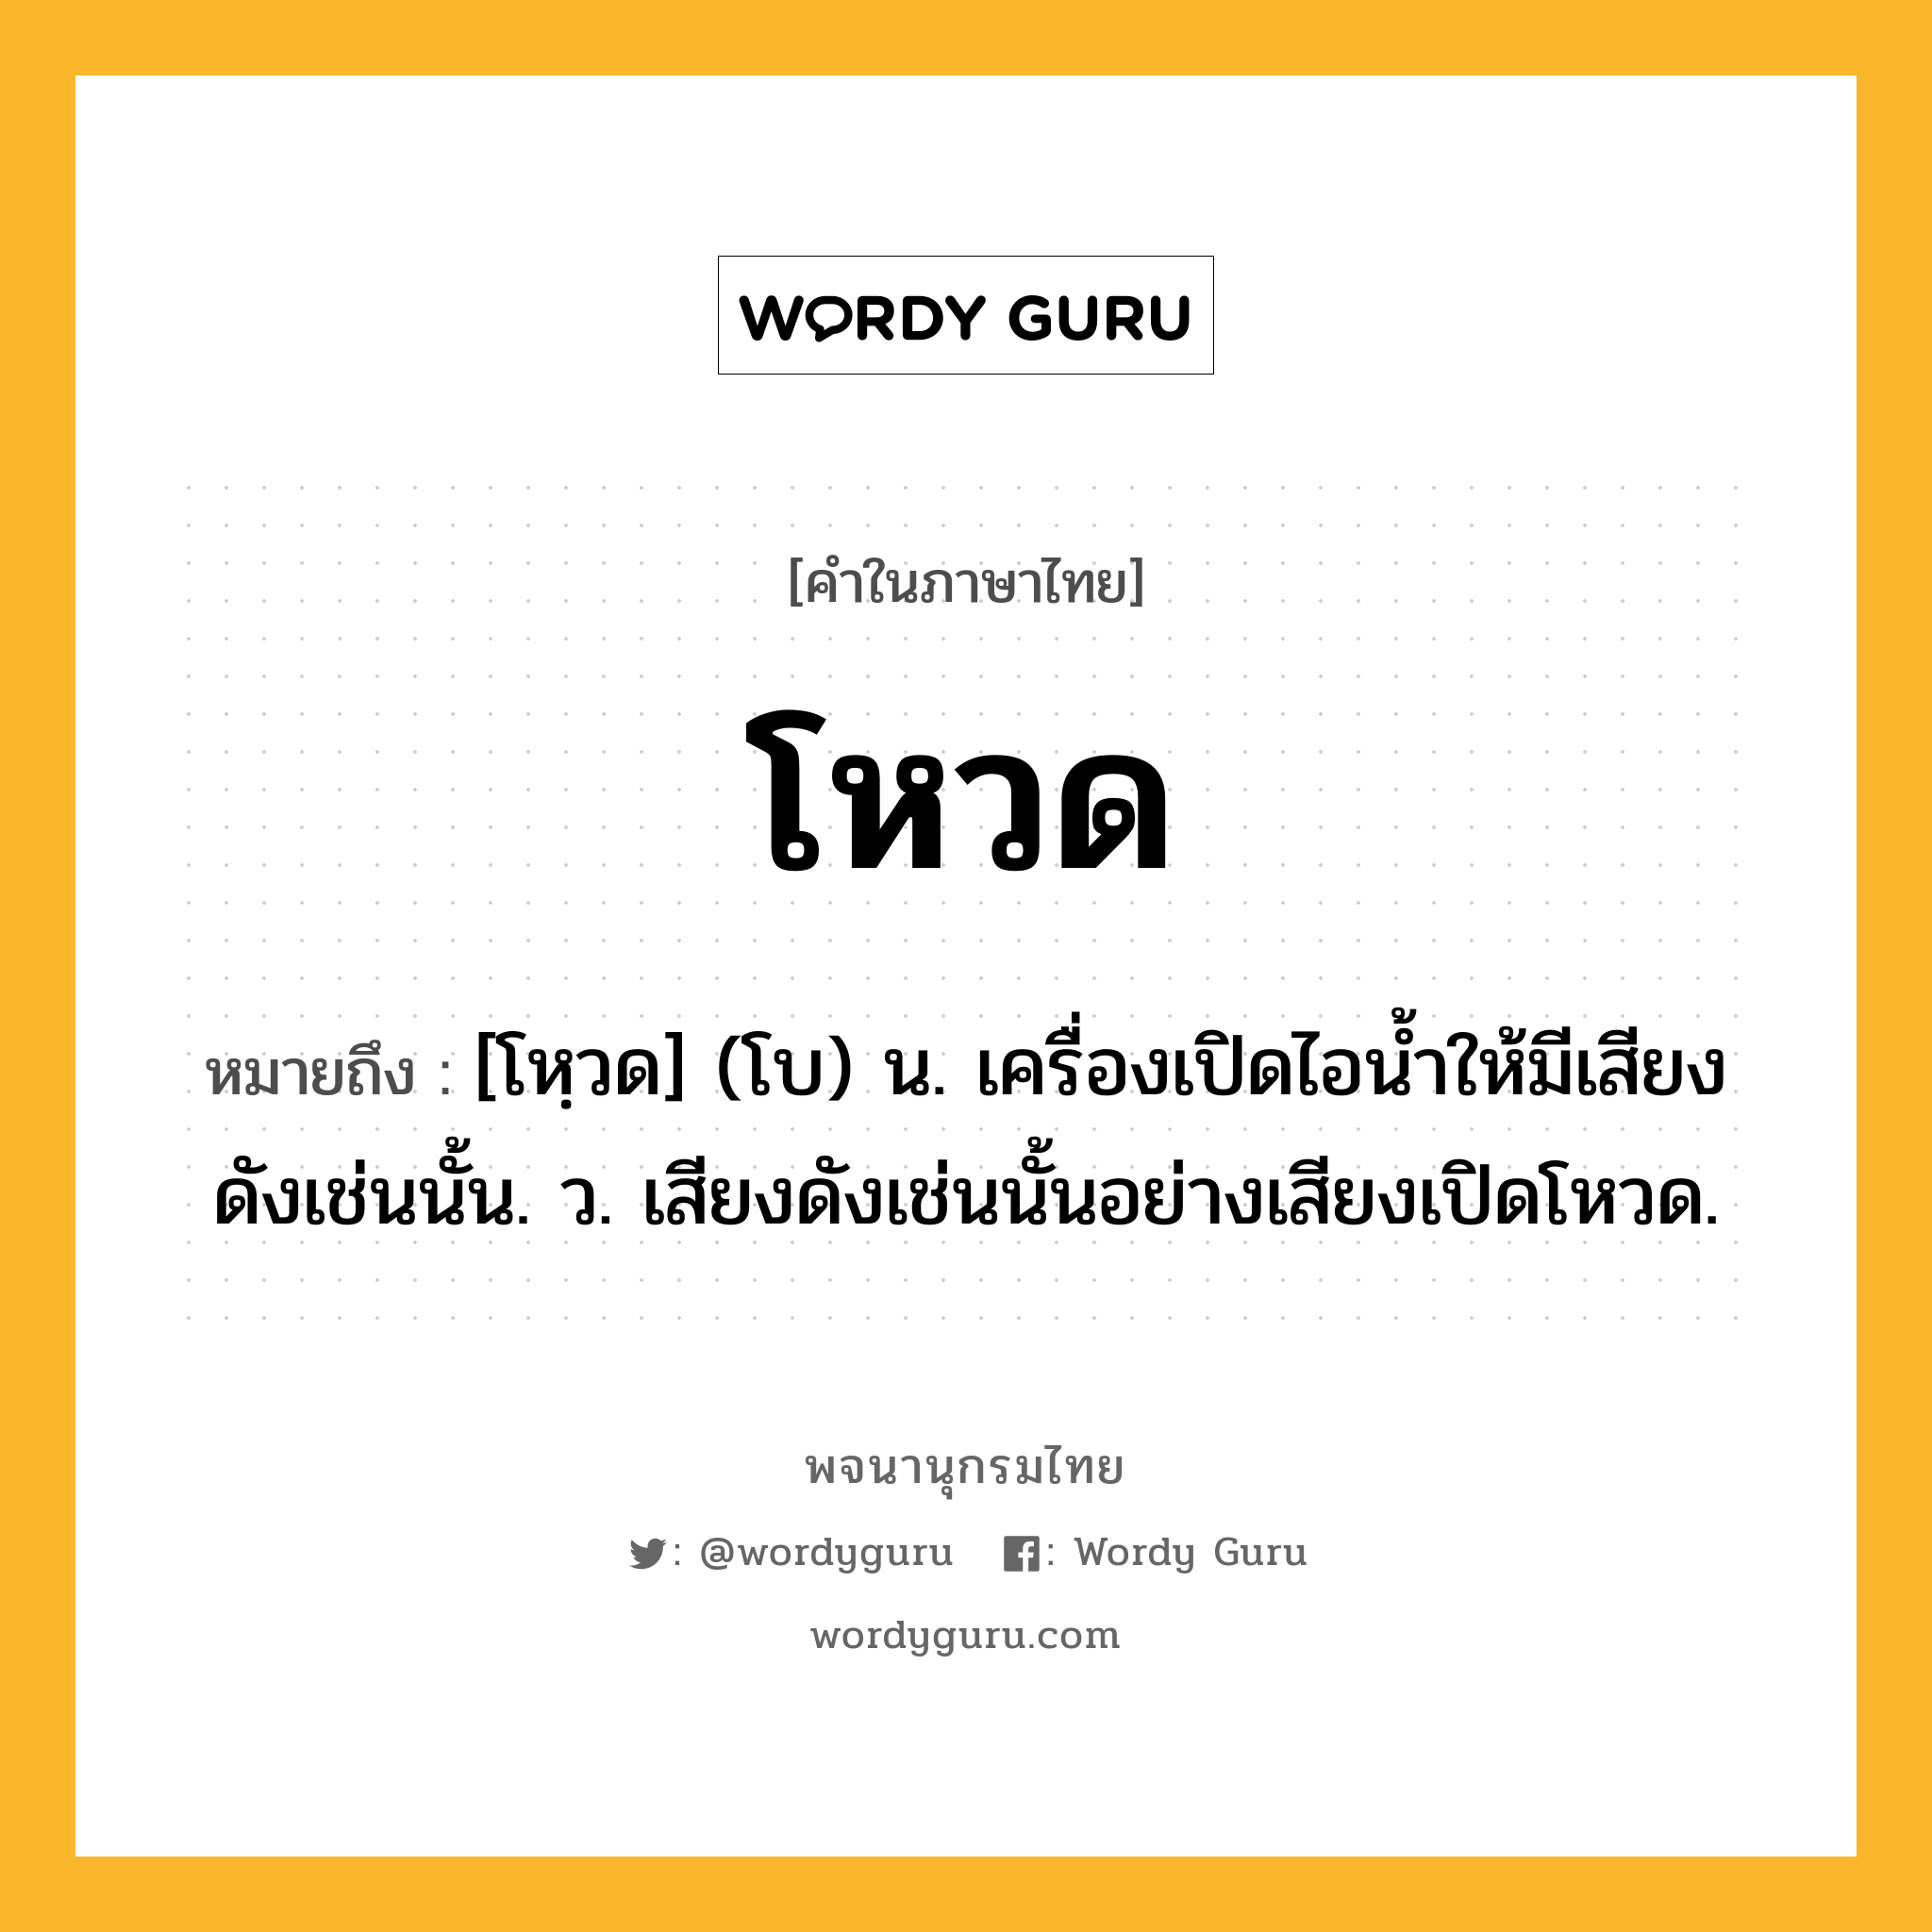 โหวด หมายถึงอะไร?, คำในภาษาไทย โหวด หมายถึง [โหฺวด] (โบ) น. เครื่องเปิดไอนํ้าให้มีเสียงดังเช่นนั้น. ว. เสียงดังเช่นนั้นอย่างเสียงเปิดโหวด.